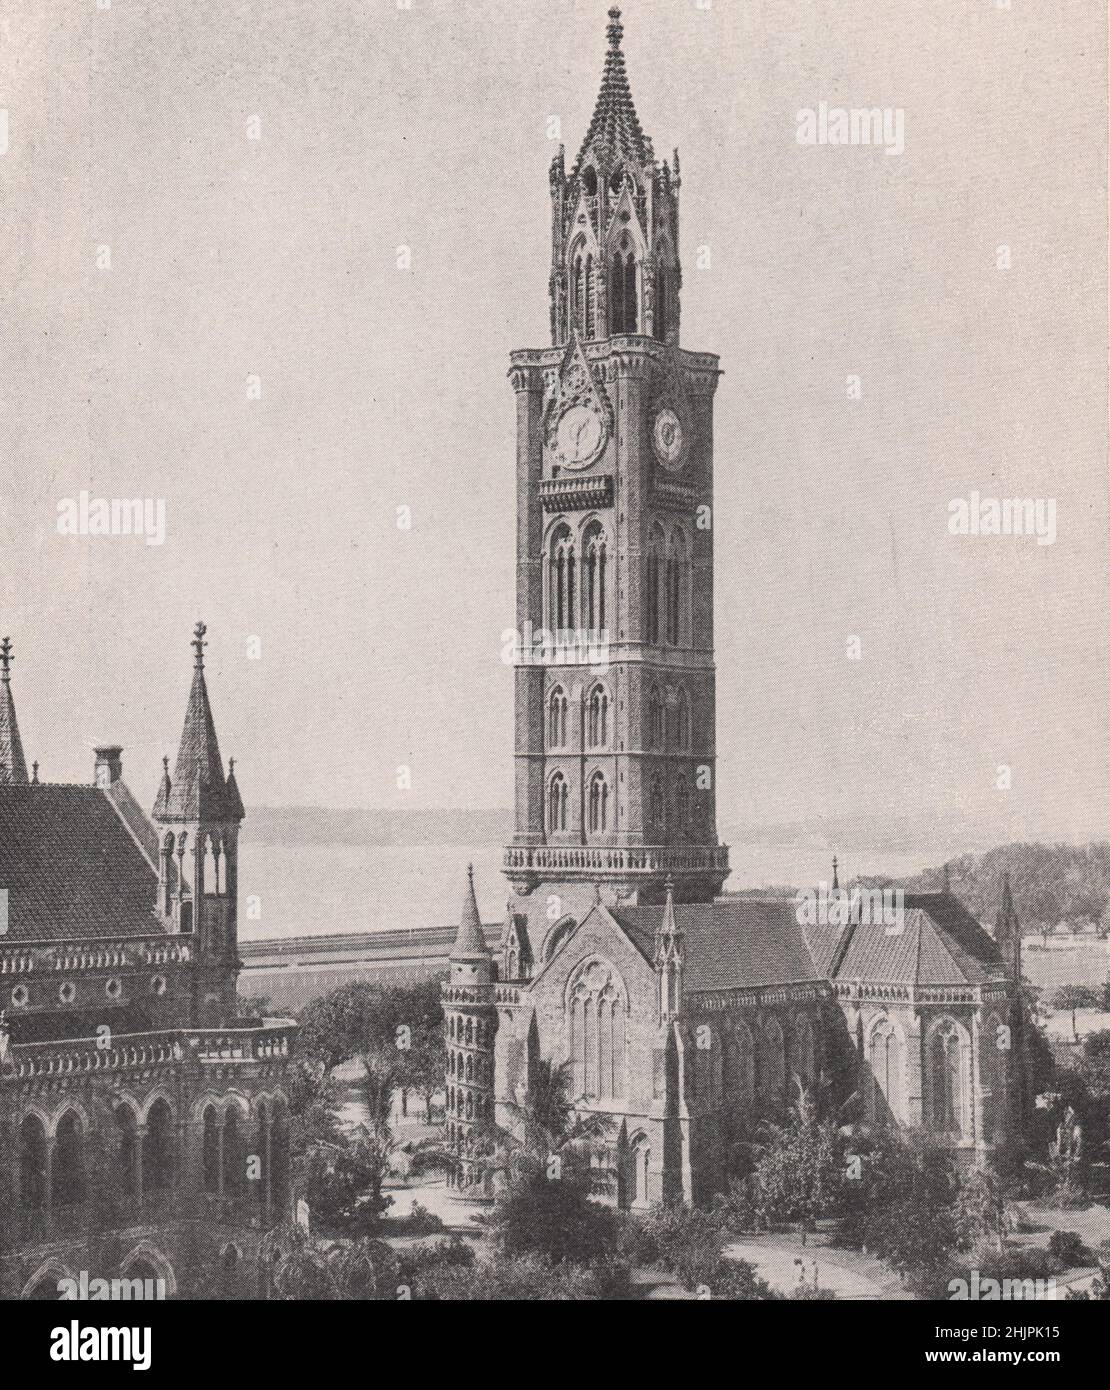 Uhrenturm mit der besten Aussicht auf Bombay. Indien. Bombay City (1923) Stockfoto